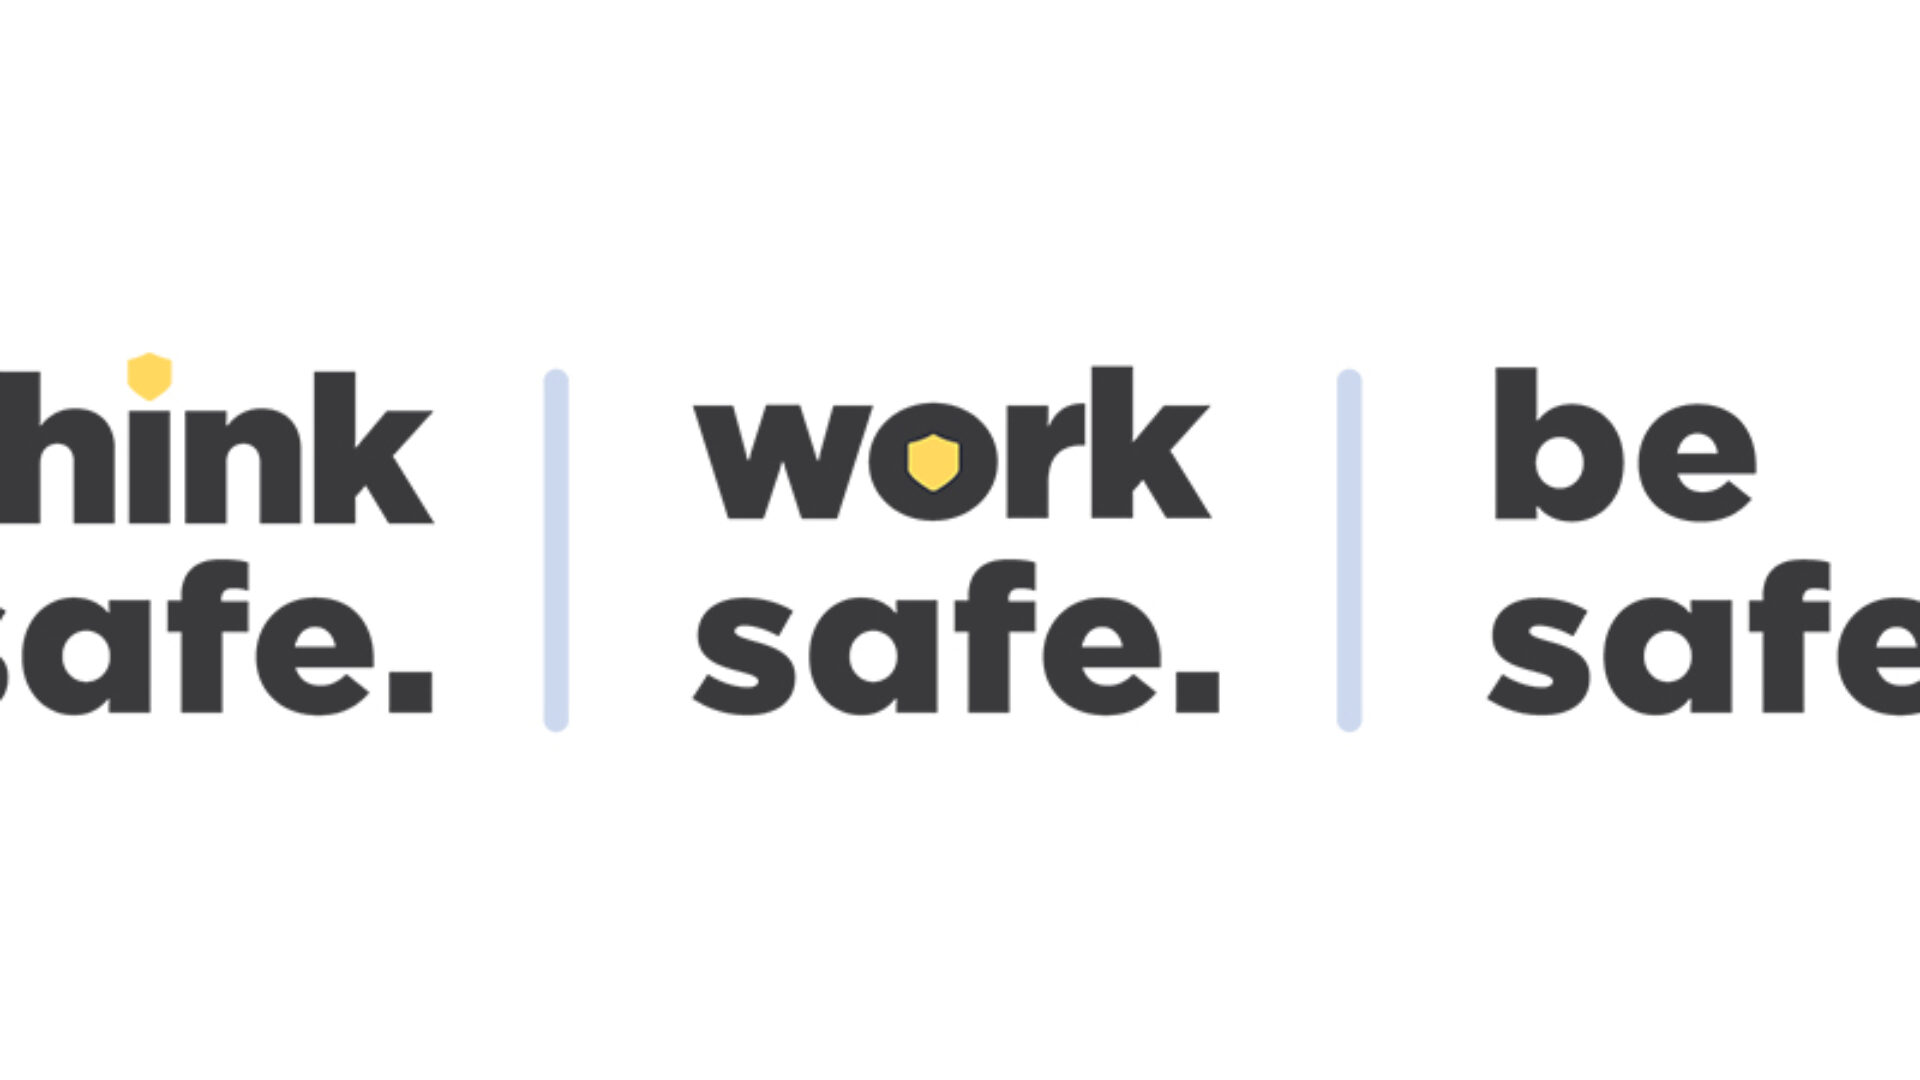 Think safe. Work safe. Be safe.